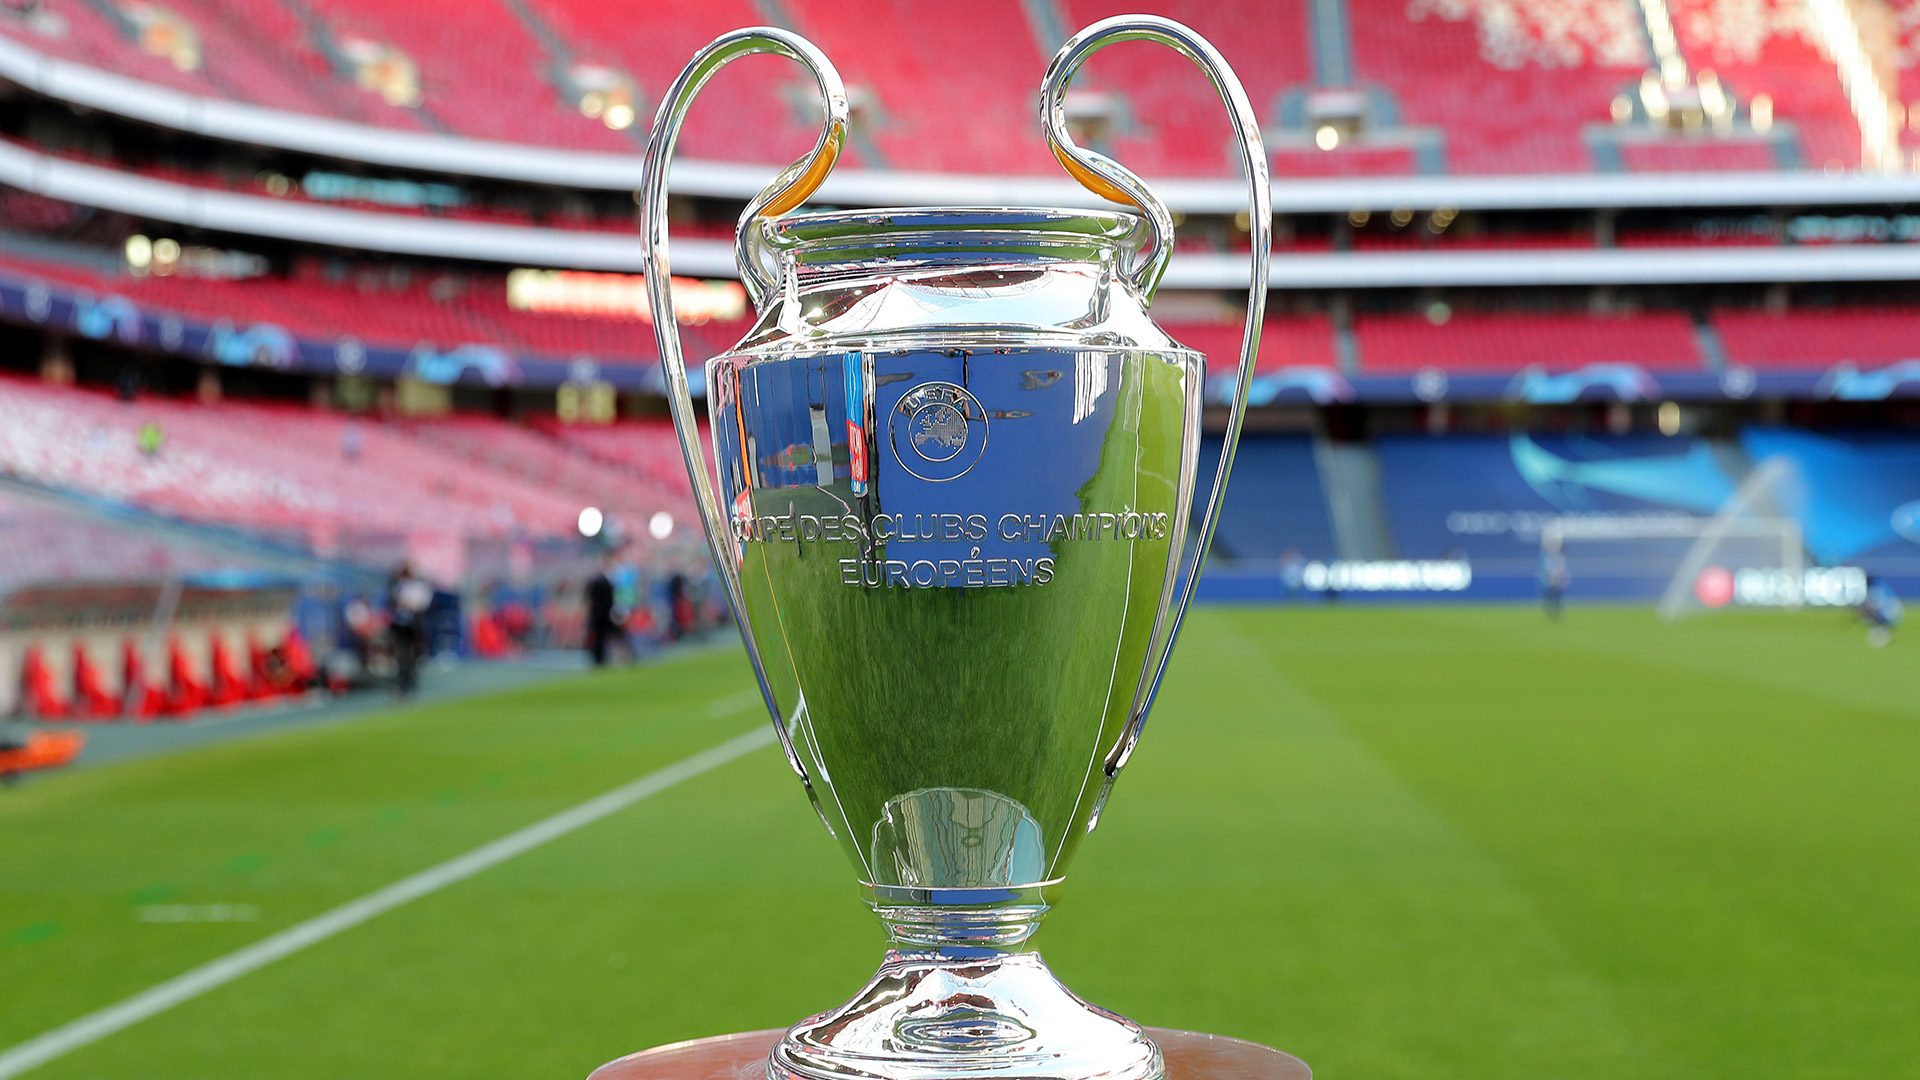 El trofeo de la Champions League, edición 2021-2022 que comenzó a disputarse hoy (Photo by Miguel A. Lopes/Pool via Getty Images)